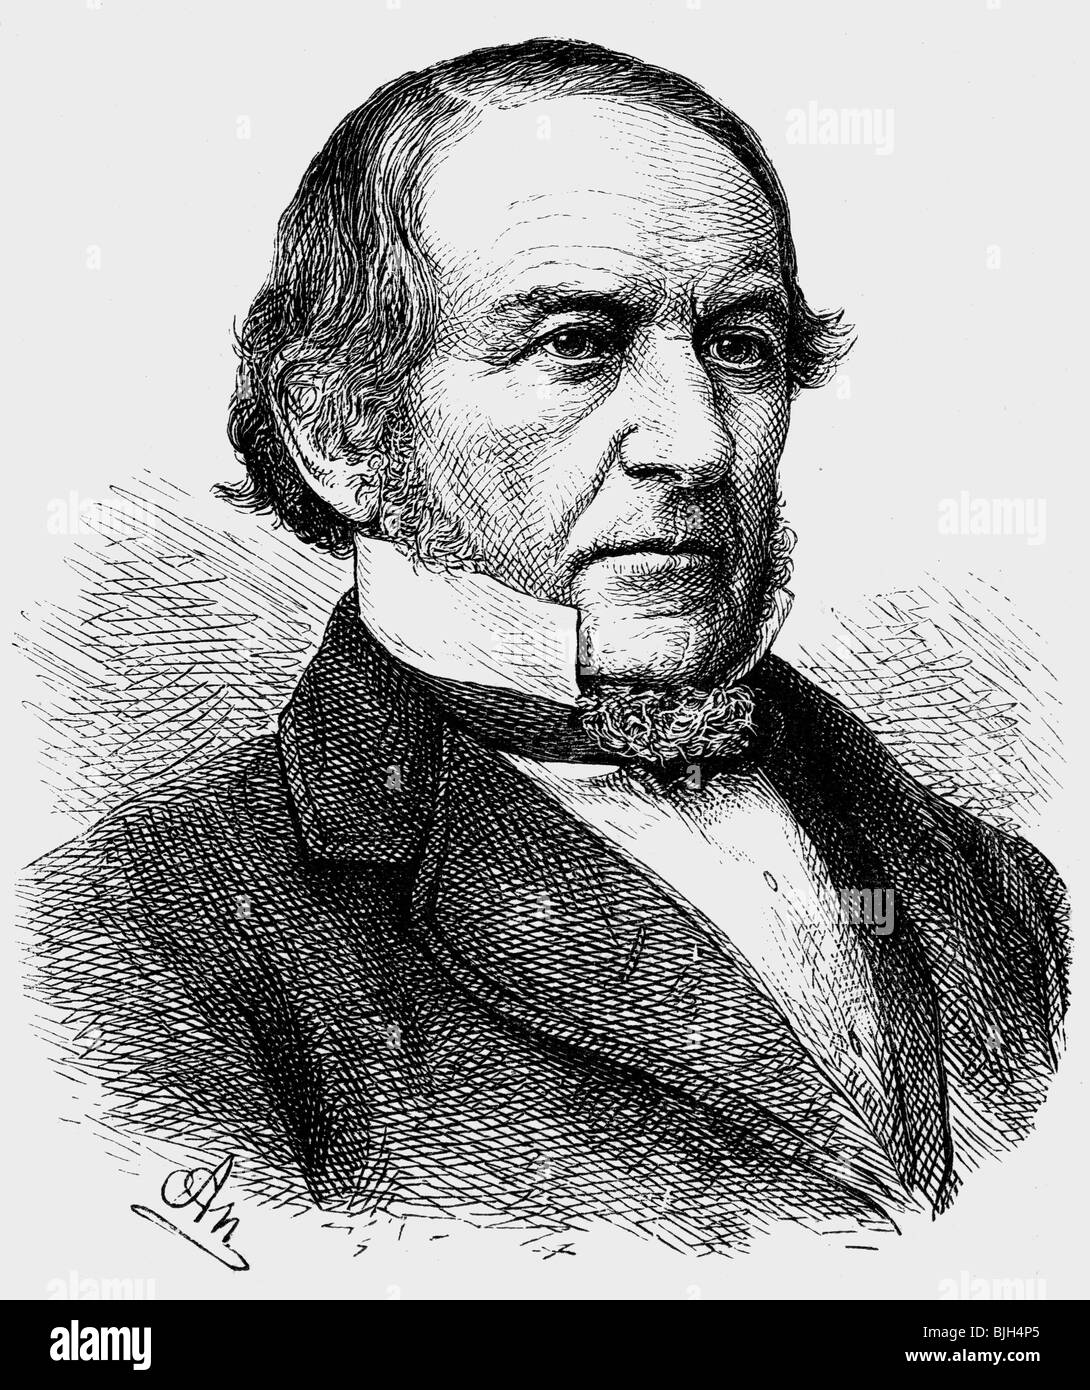 Gladstone, William Eward, 29.12.1809 - 19.5.1898, British politician (Lib.), portrait, wood engraving by Adolf Neumann, 19th century, , Stock Photo